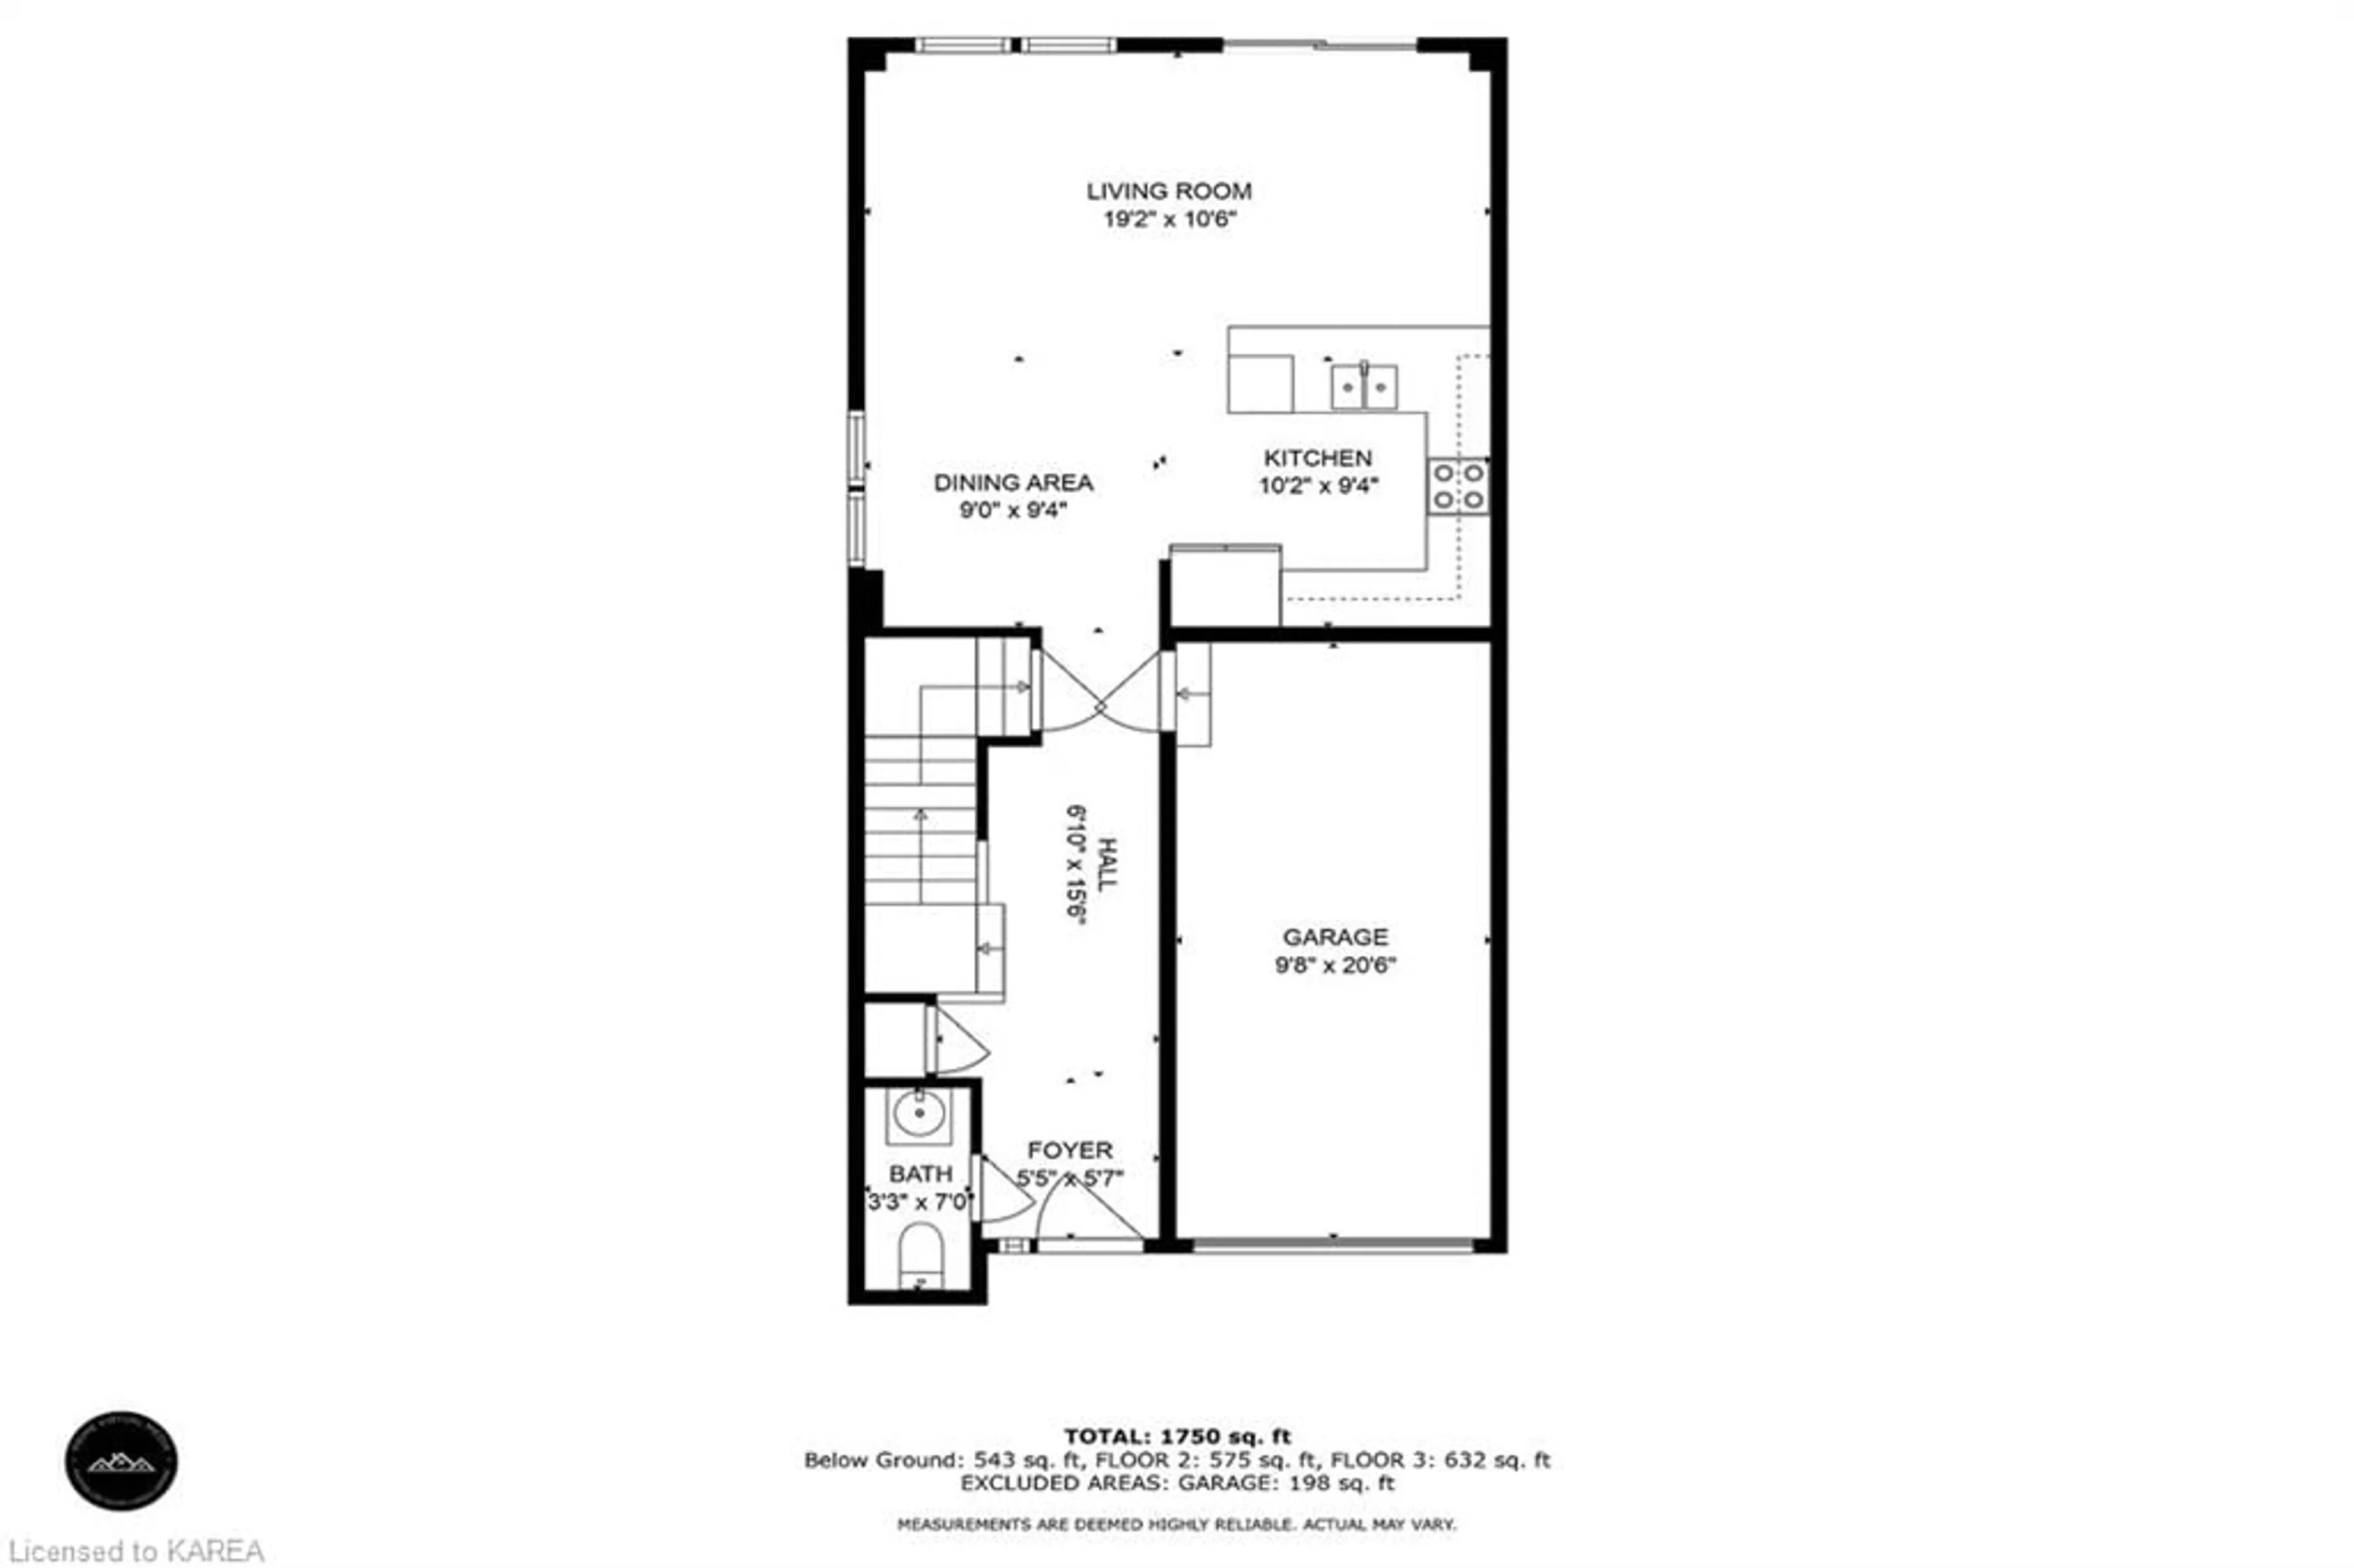 Floor plan for 1564 Crimson Cres, Kingston Ontario K7P 0H4